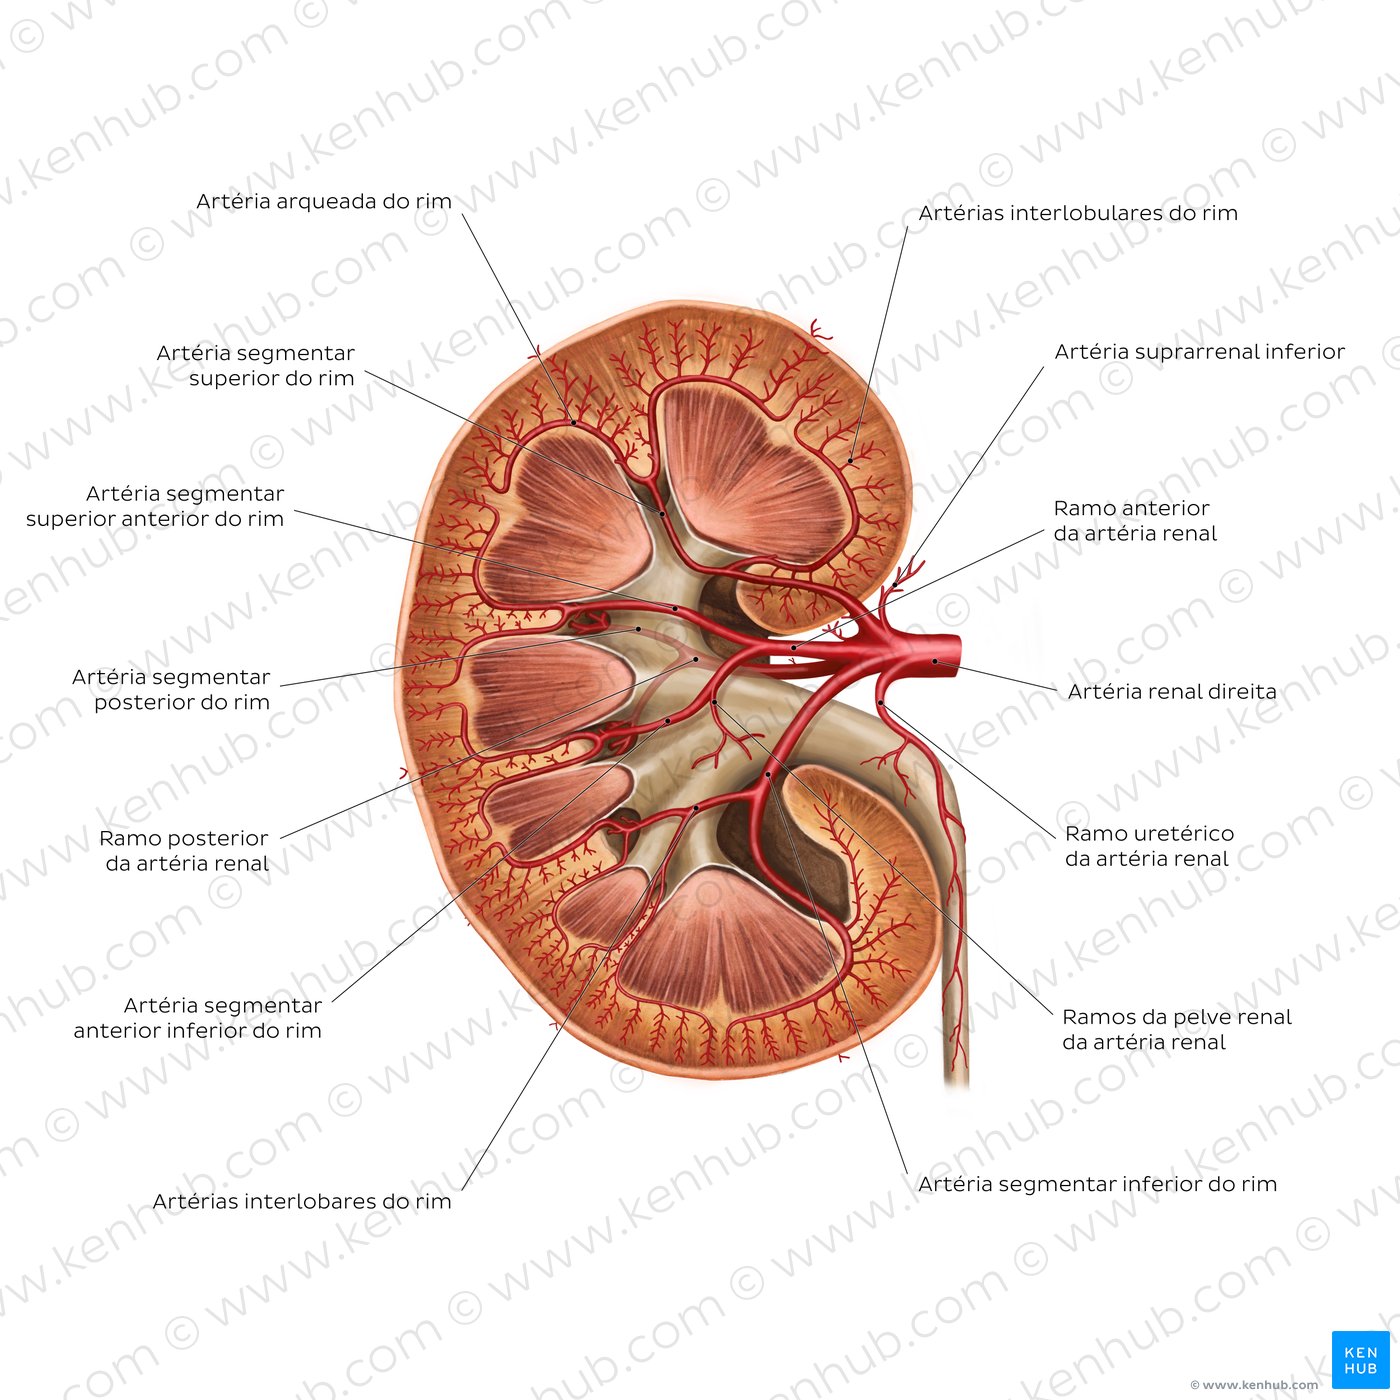 Artérias do rim (visão geral)